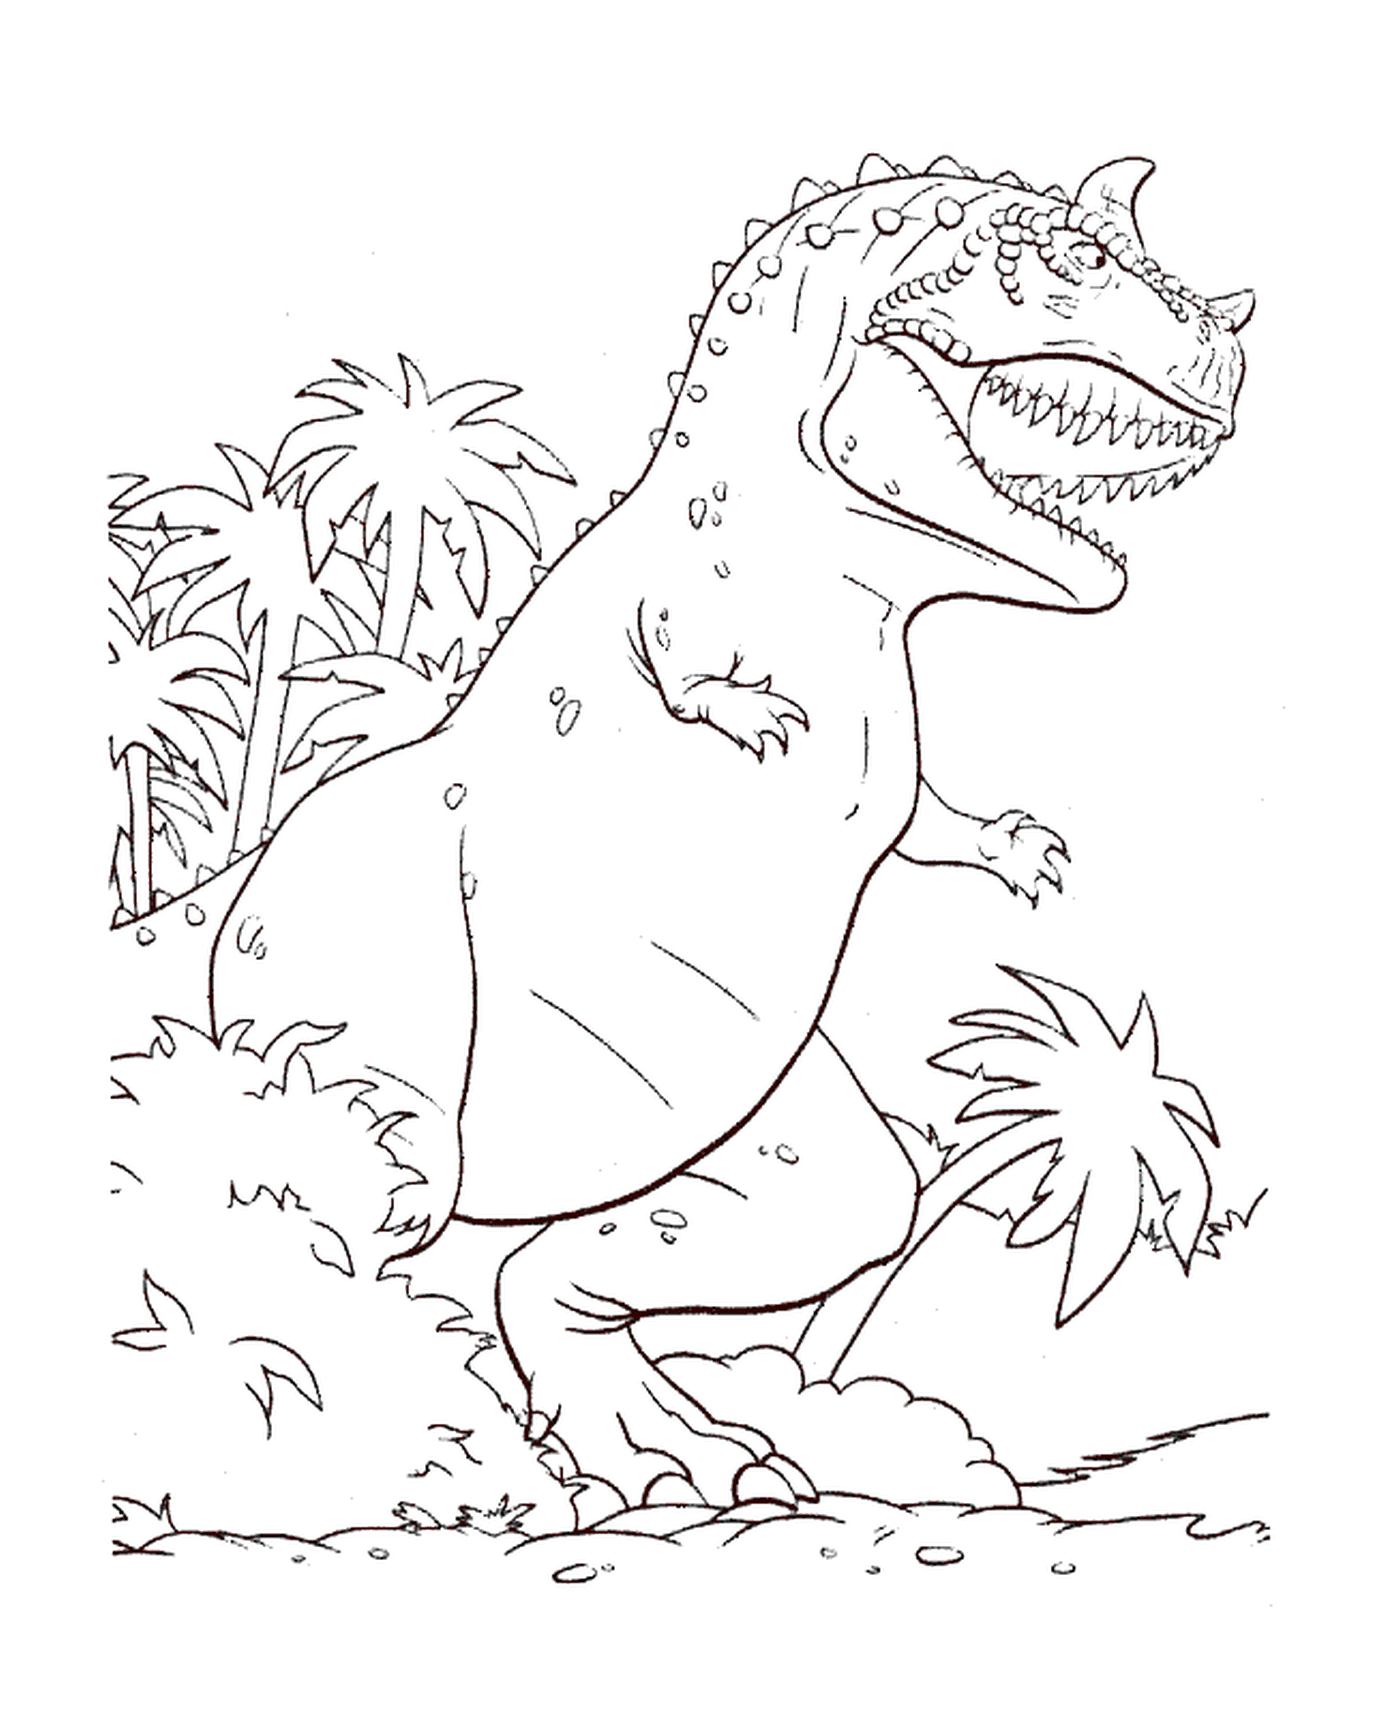   Un tyrannosaure se tenant dans l'herbe 